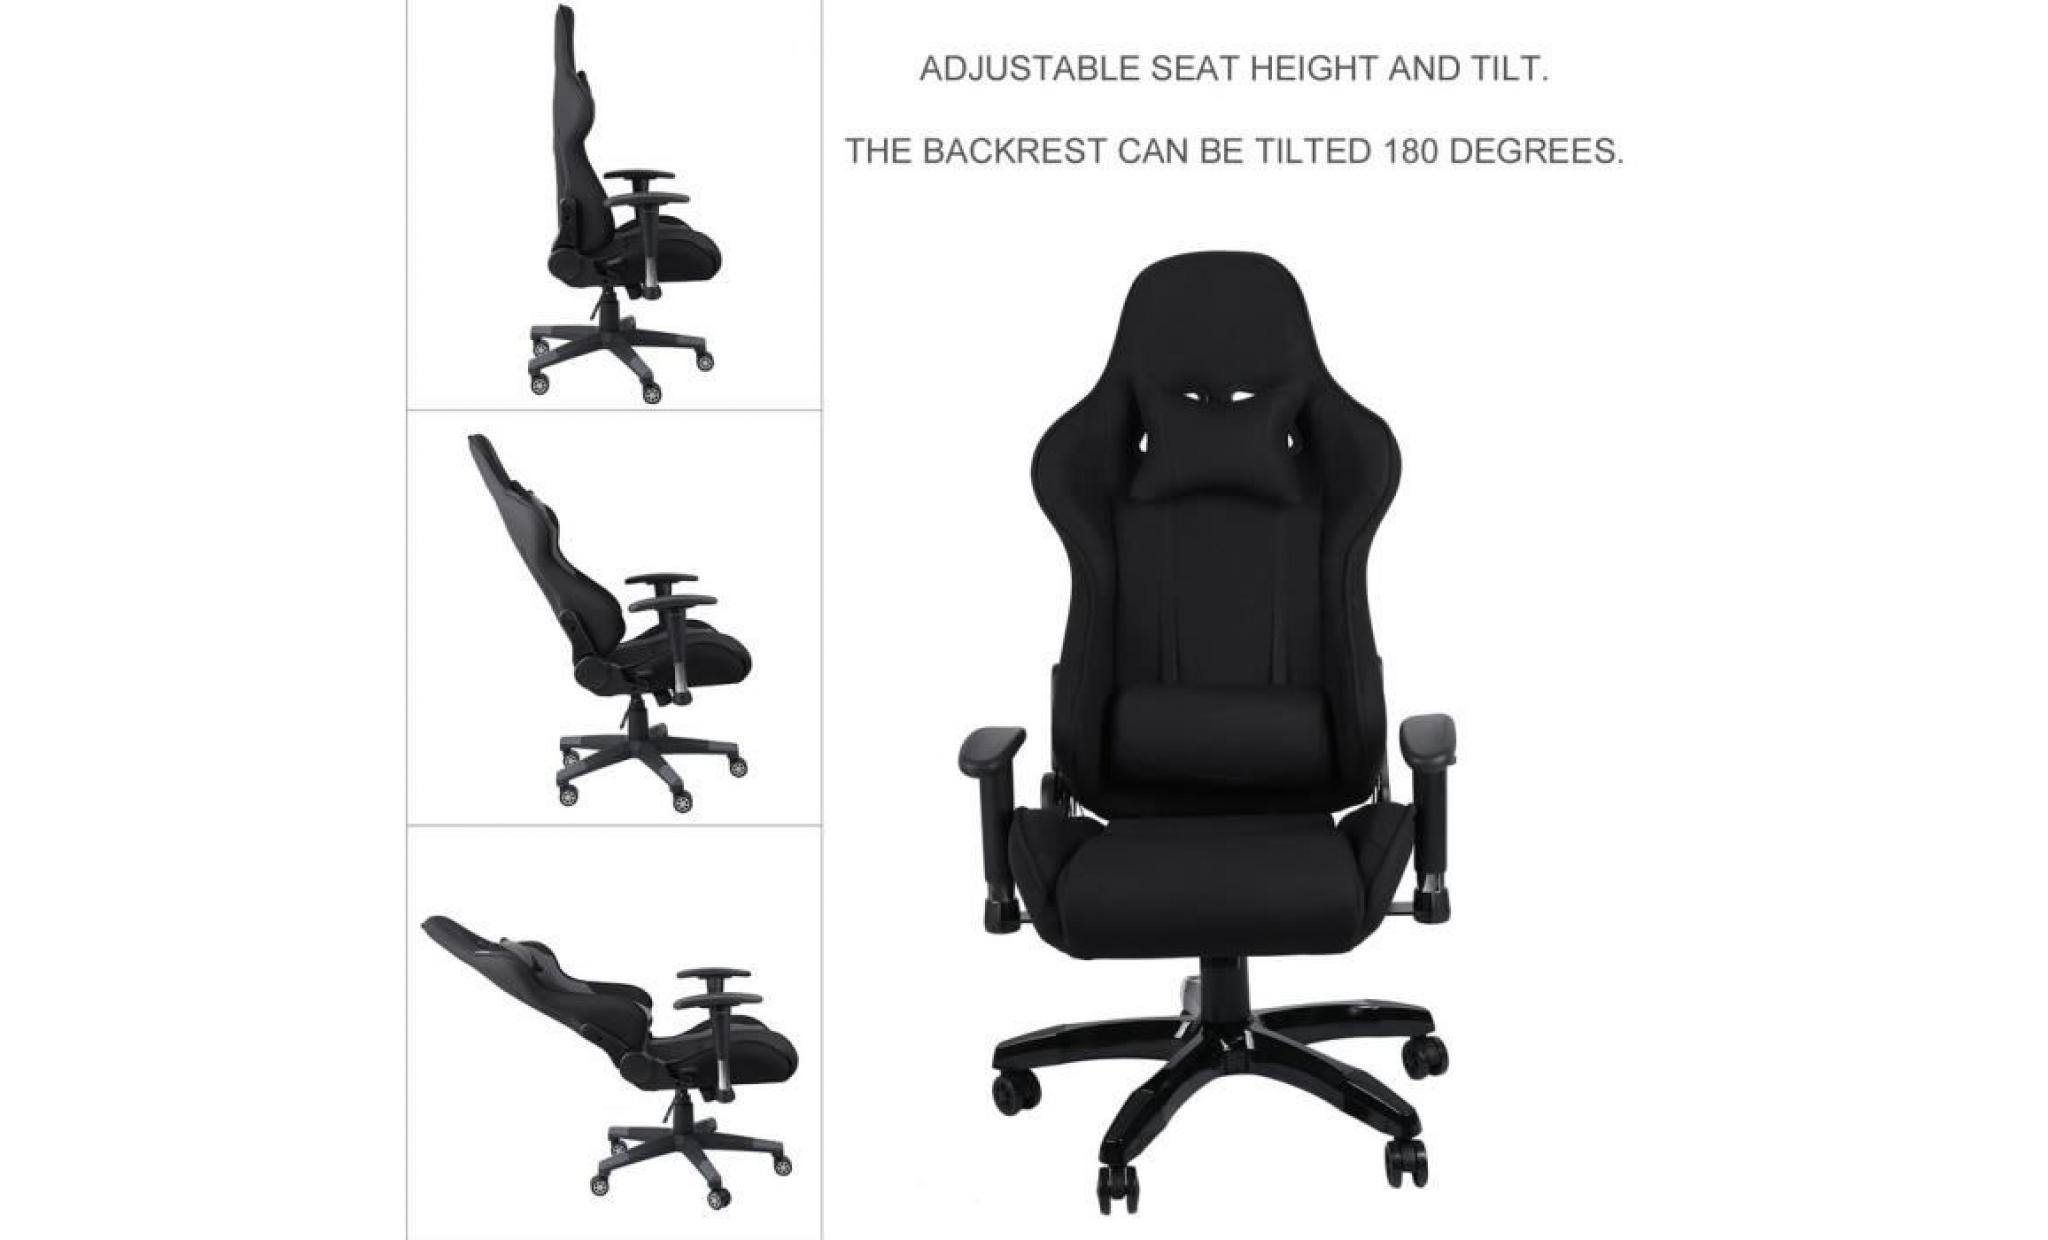 leshp® fauteuil de bureau façon siège baquet rallye en tissu noir pas cher